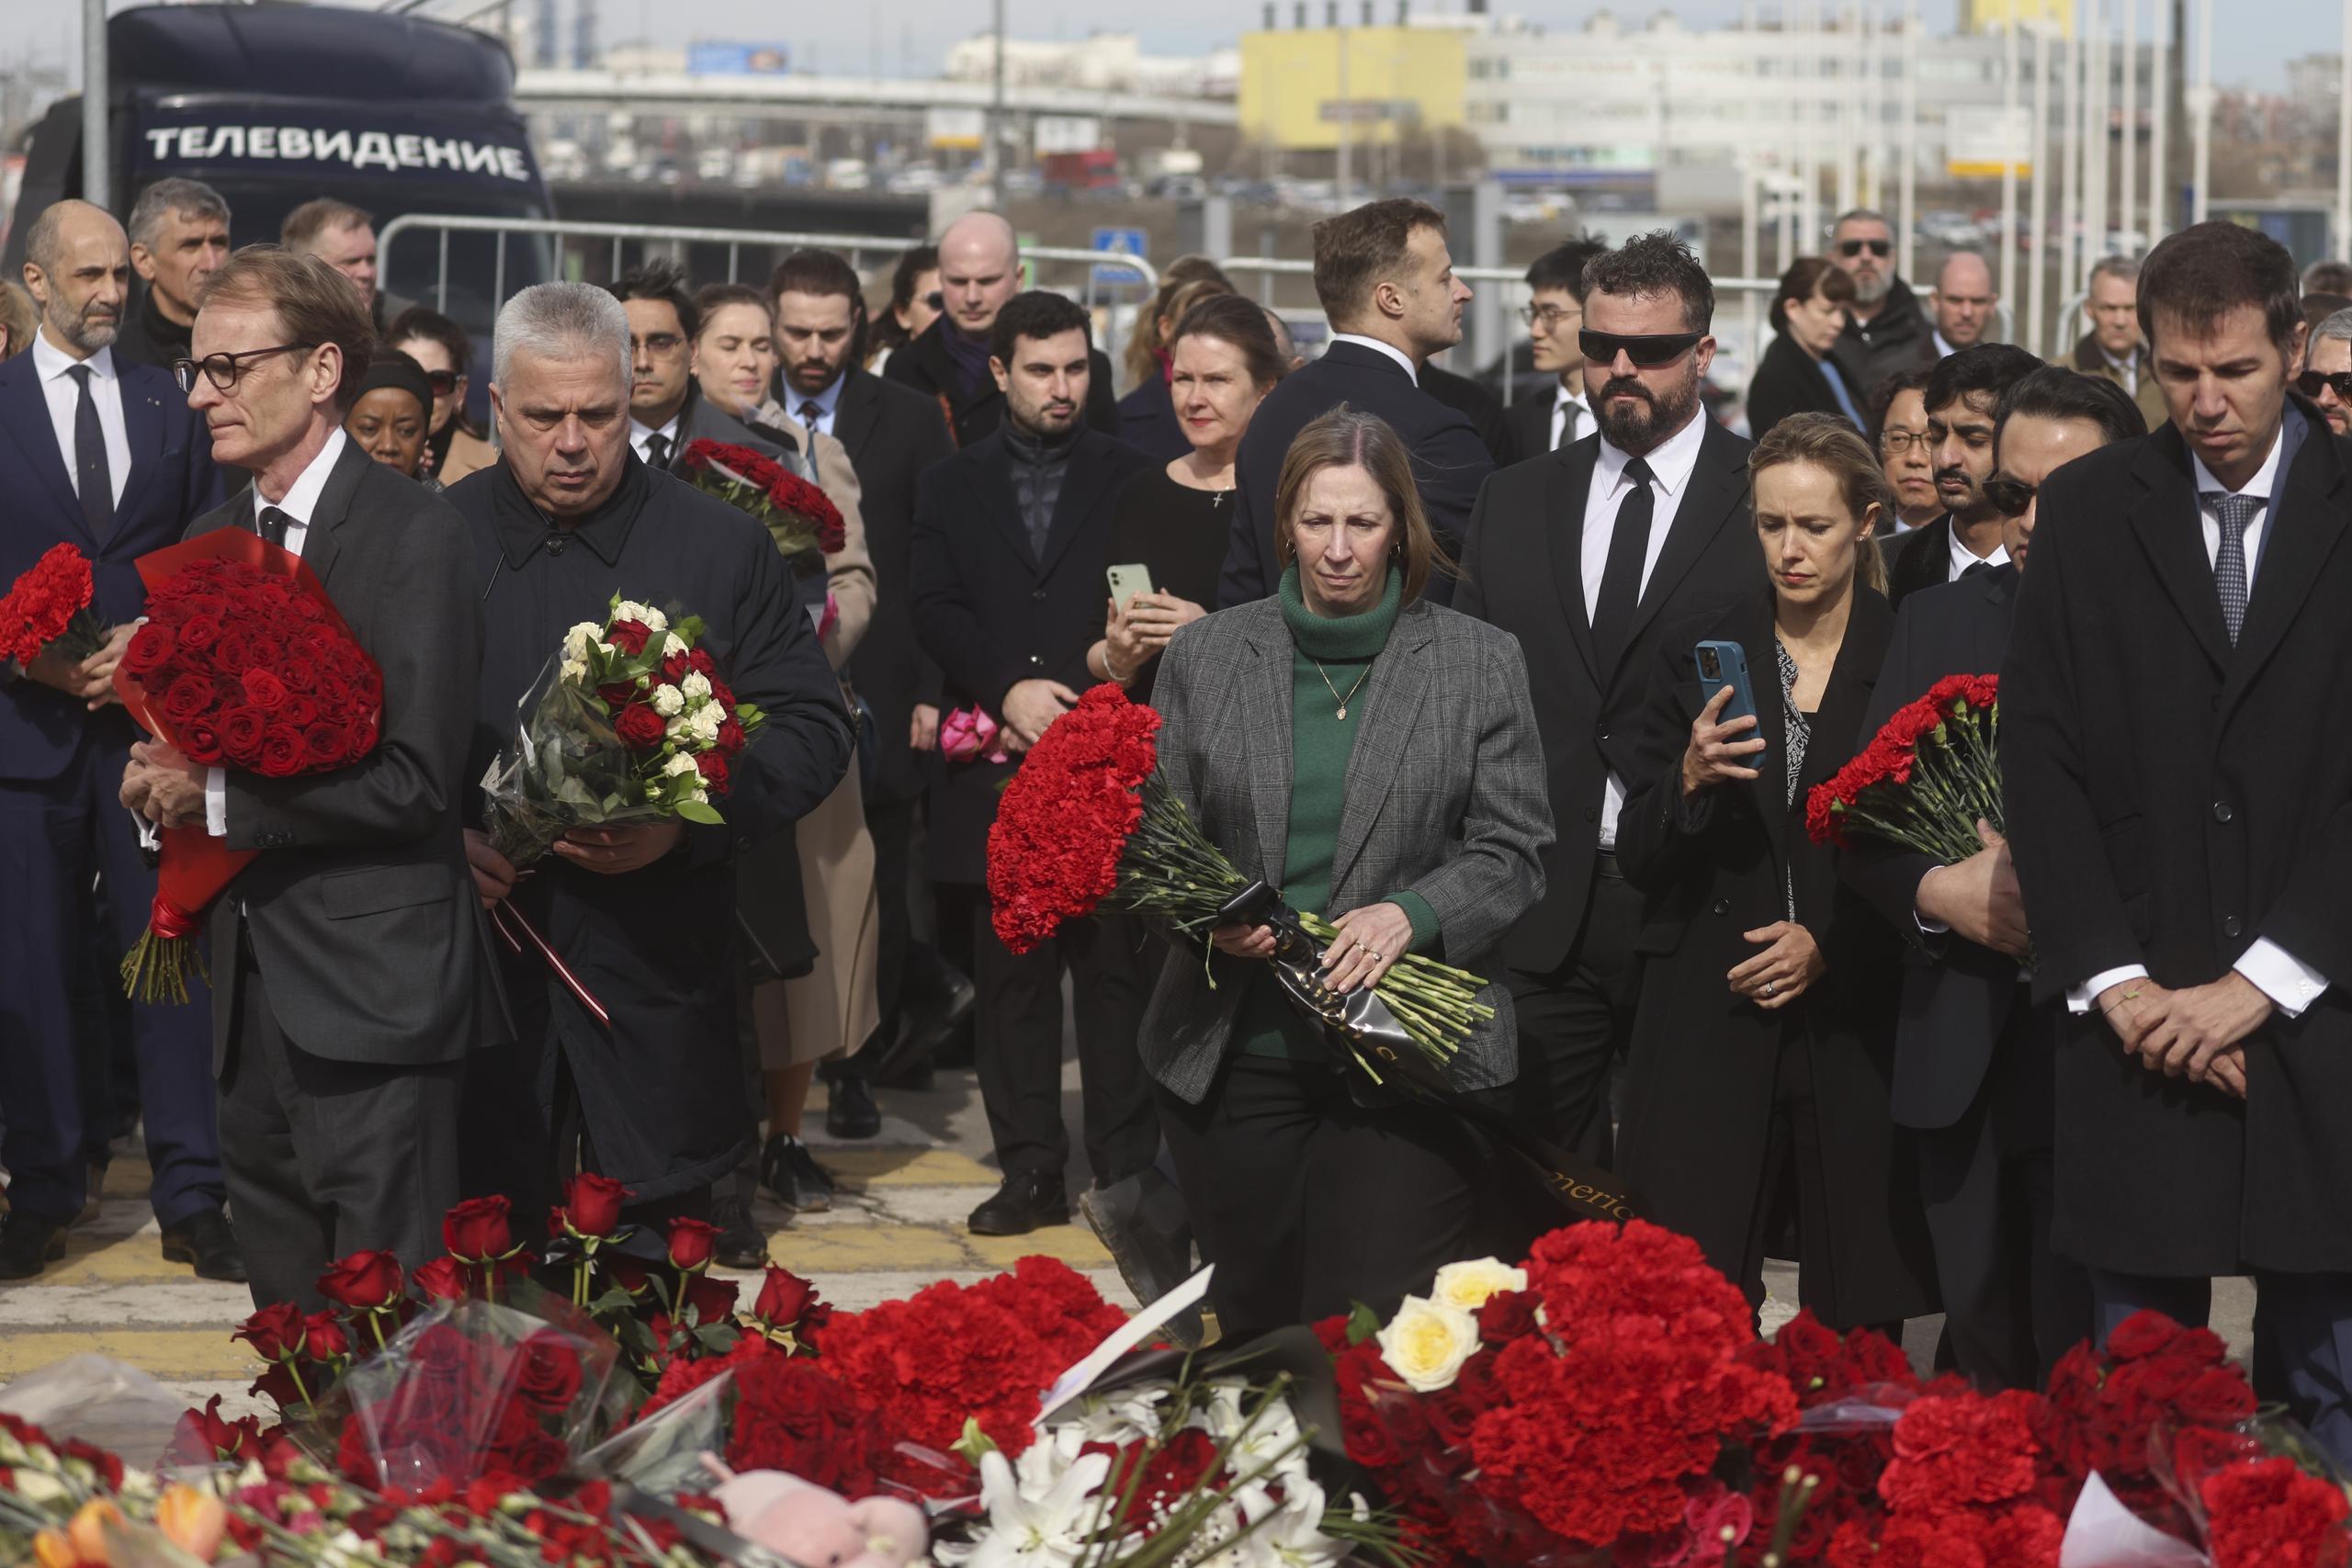 La embajadora estadounidense a Rusia, Lynne Tracy (centro), y otros embajadores colocan flores frente a la sala de conciertos Crocus City Hall en las afueras de Moscú, sábado 30 de marzo. (Sergei Ilnitsky/Pool Photo via AP)